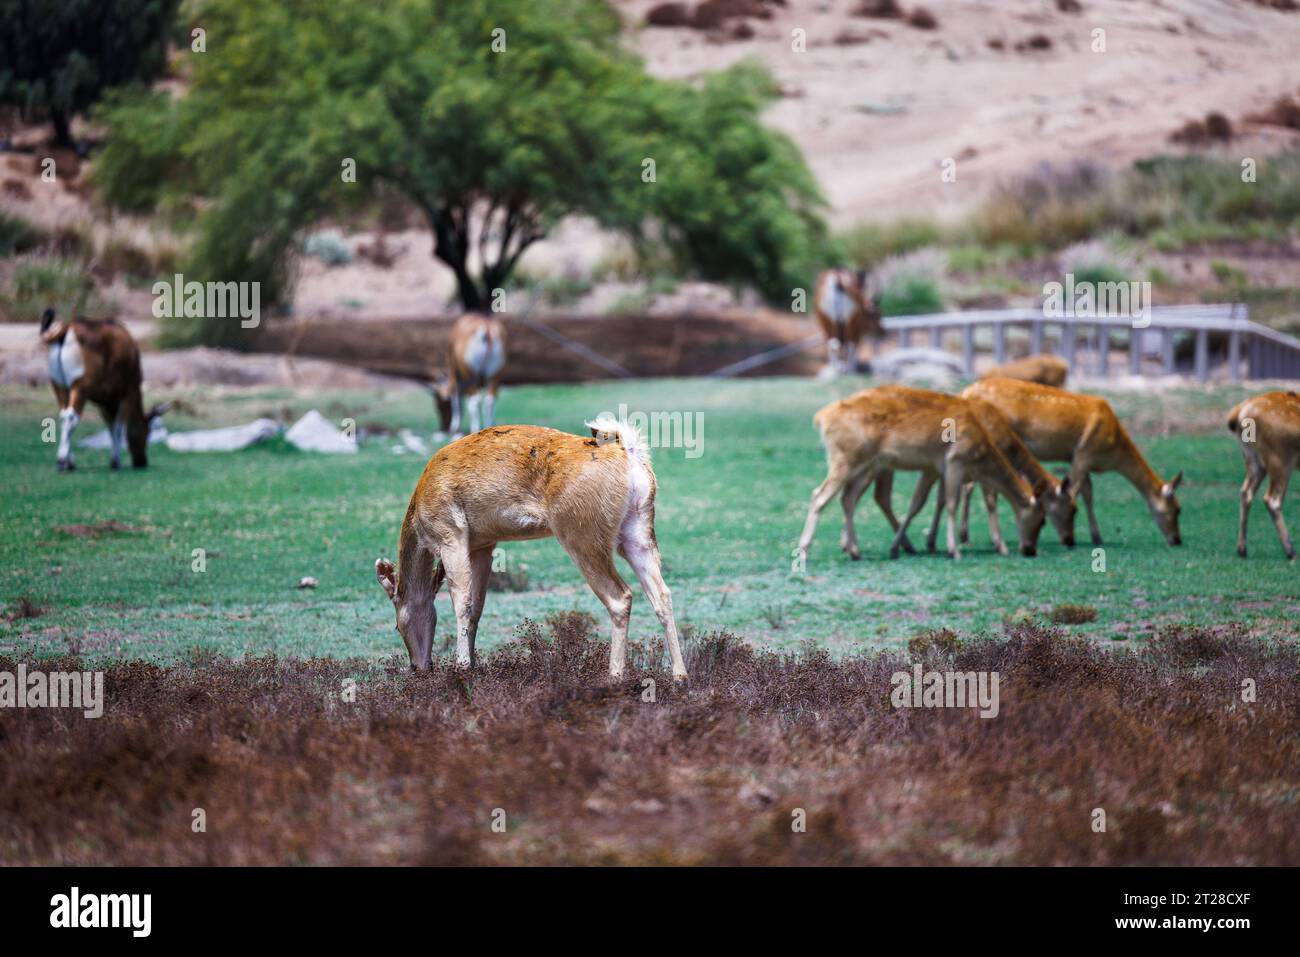 african deer grazing on green grass Stock Photo